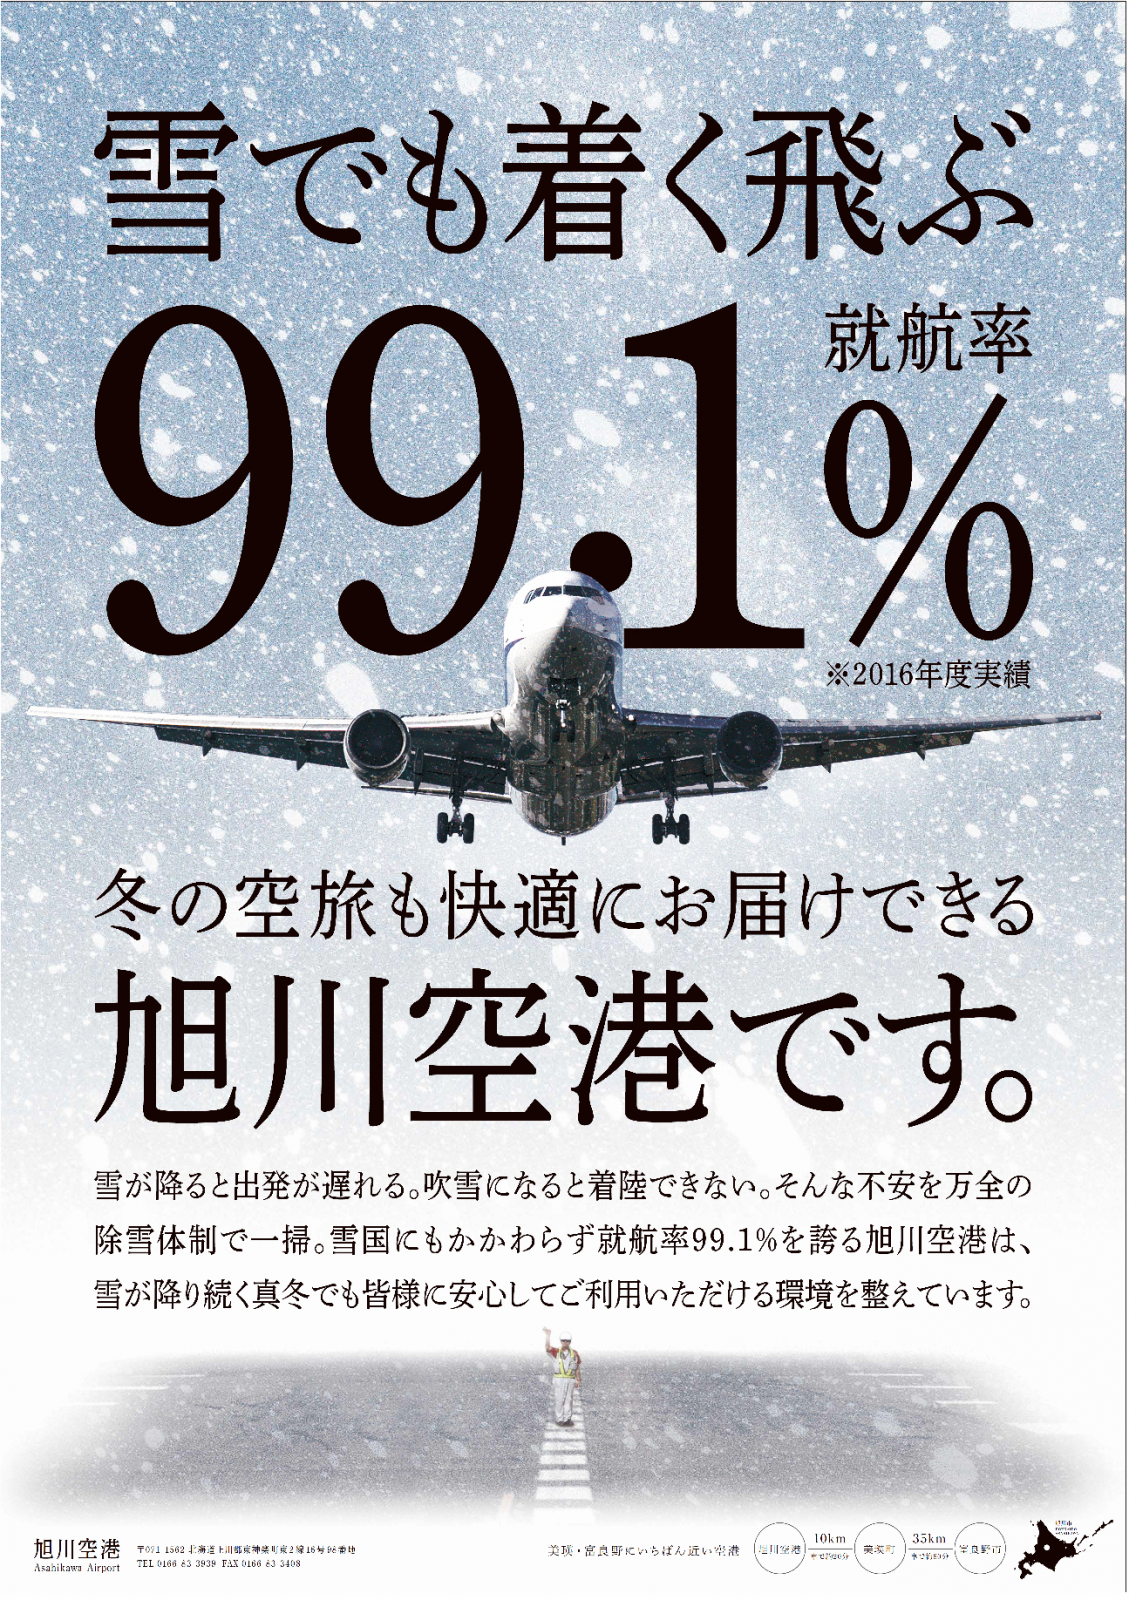 今年も旭川空港は 雪でも着きます 飛びます 旭川空港ターミナル